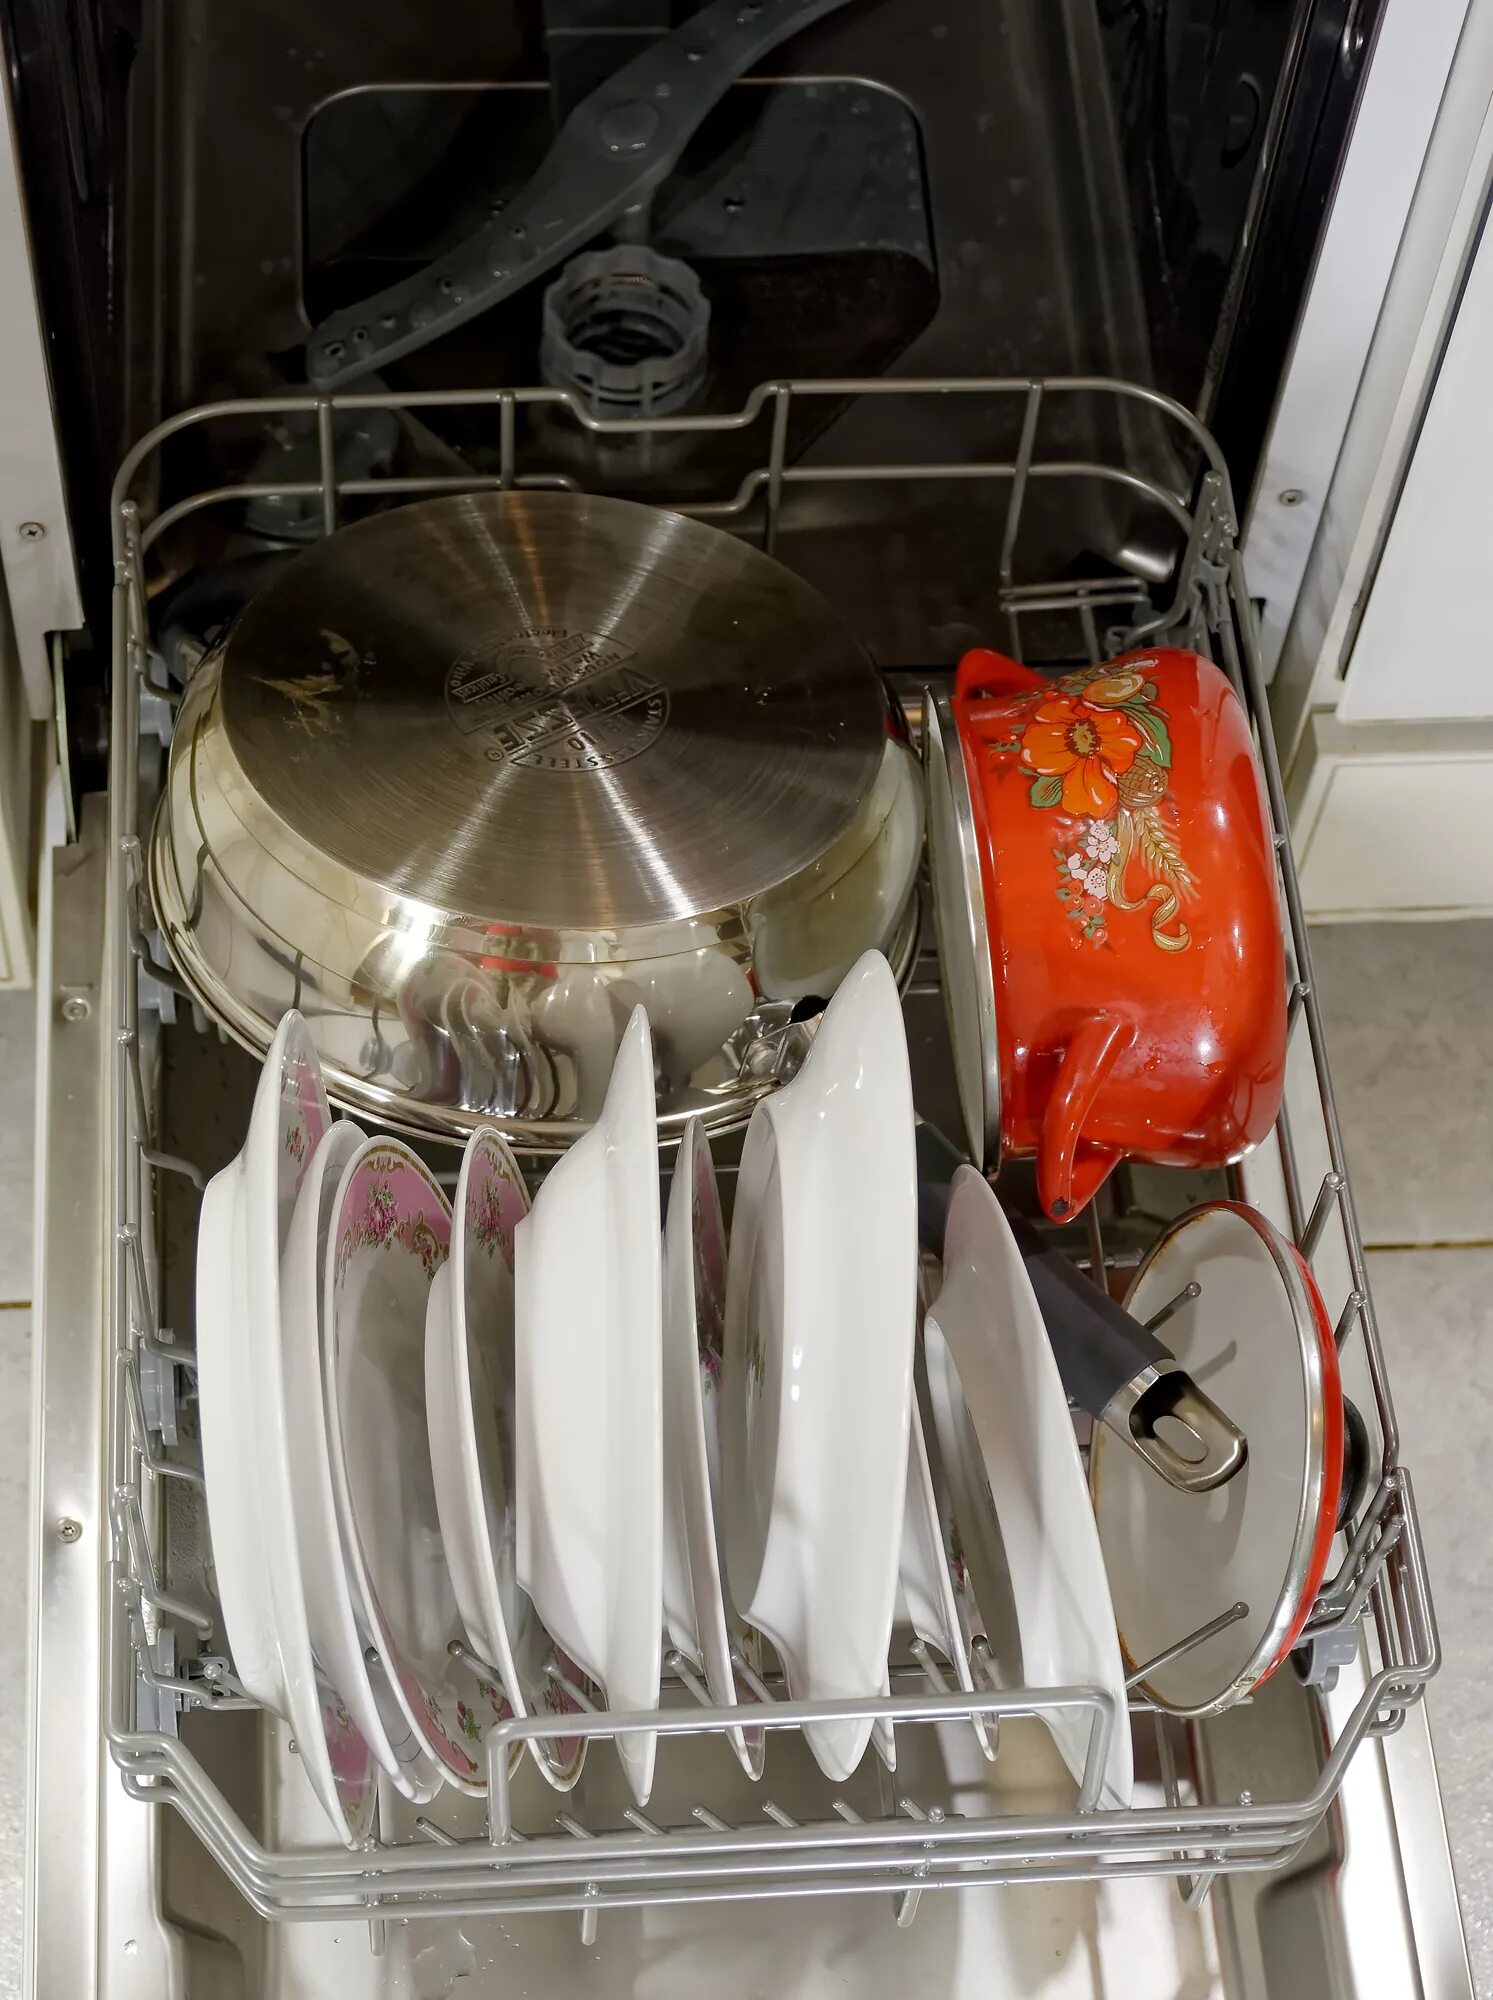 Посудомоечная машина Candy сковородки кастрюли. Загрузка посудомоечной машины Candy. Загрузка посудомоечной машины 45. Посудомойка плохо отмывает